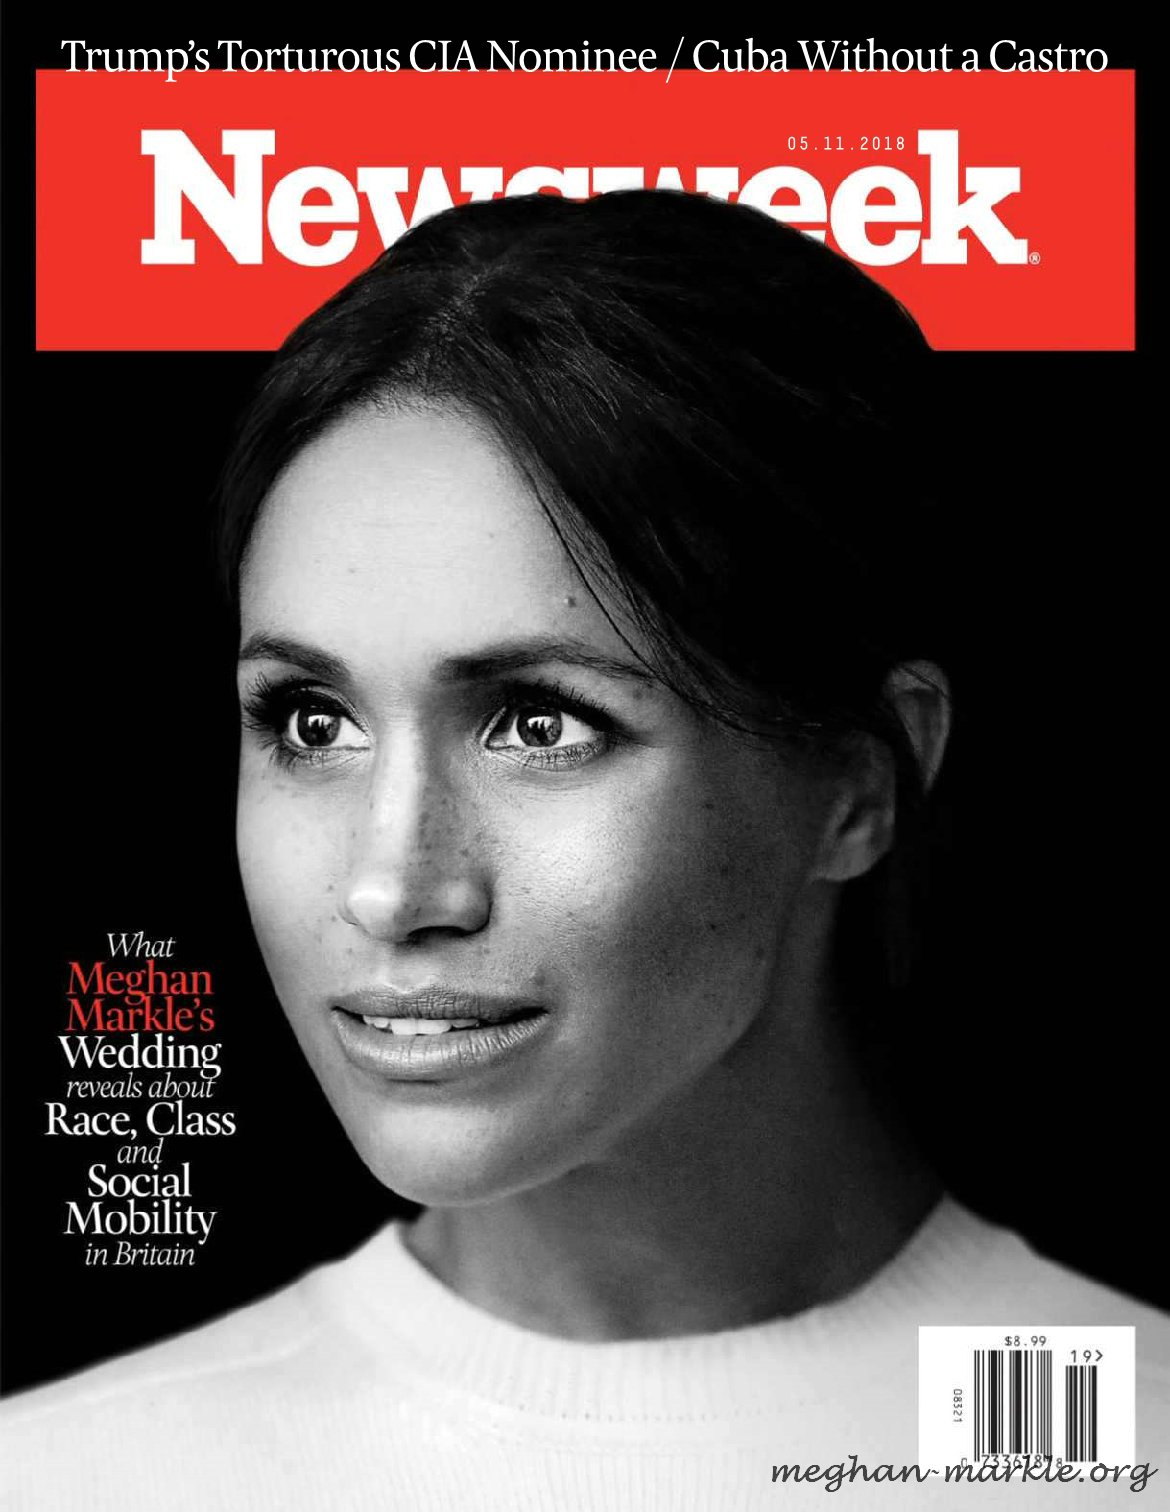 Newsweek-0001.jpg